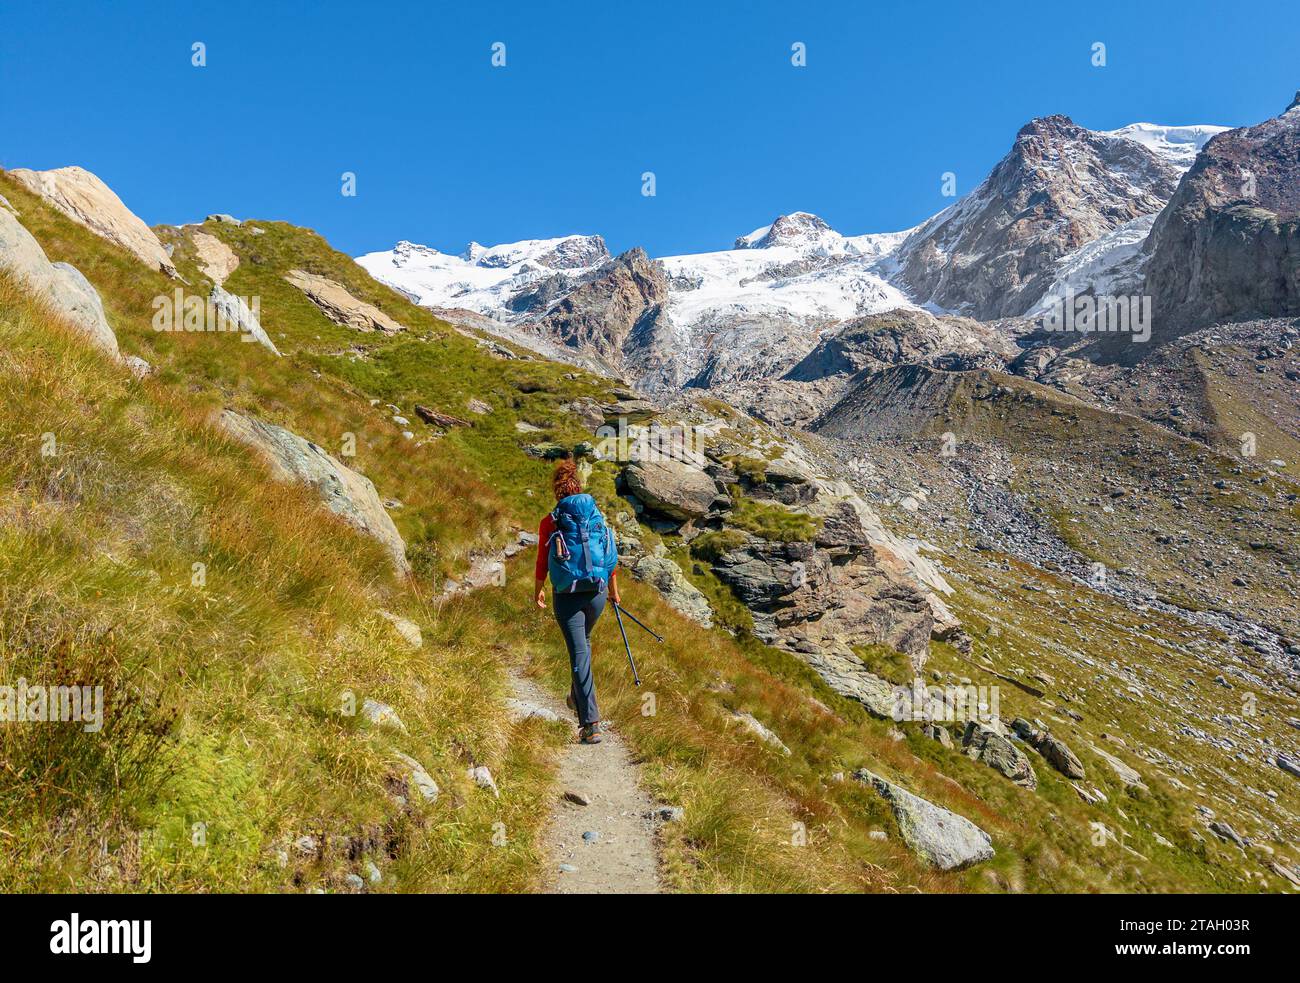 Monte Rosa (Italia) - Una vista sulle montagne in Val d'Ayas con il Monte Rosa vetta delle Alpi, sentieri alpinistici per il Rifugio Mezzalama e Guida di Ayas Foto Stock